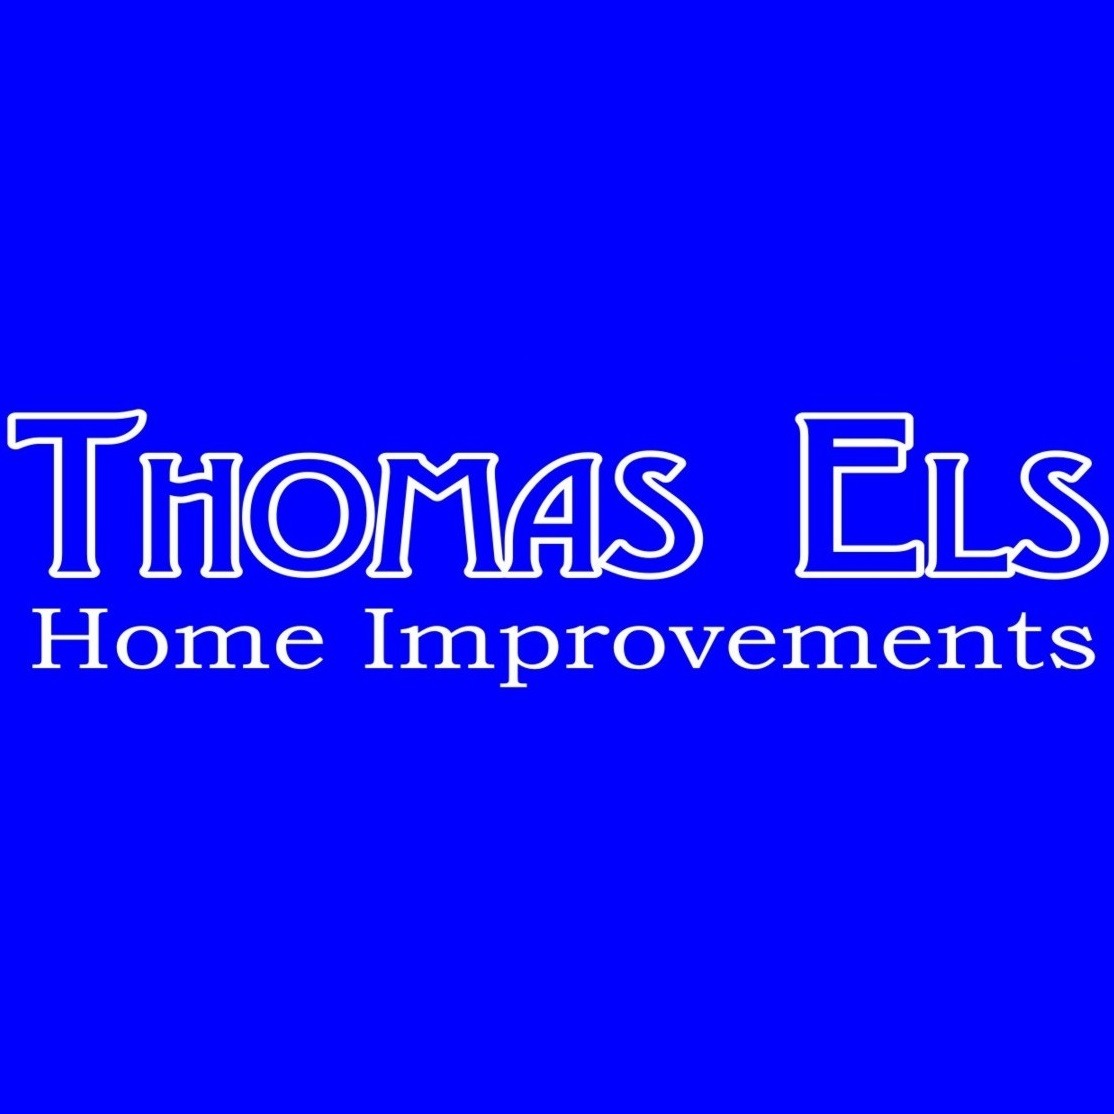 Thomas Els Home Improvements